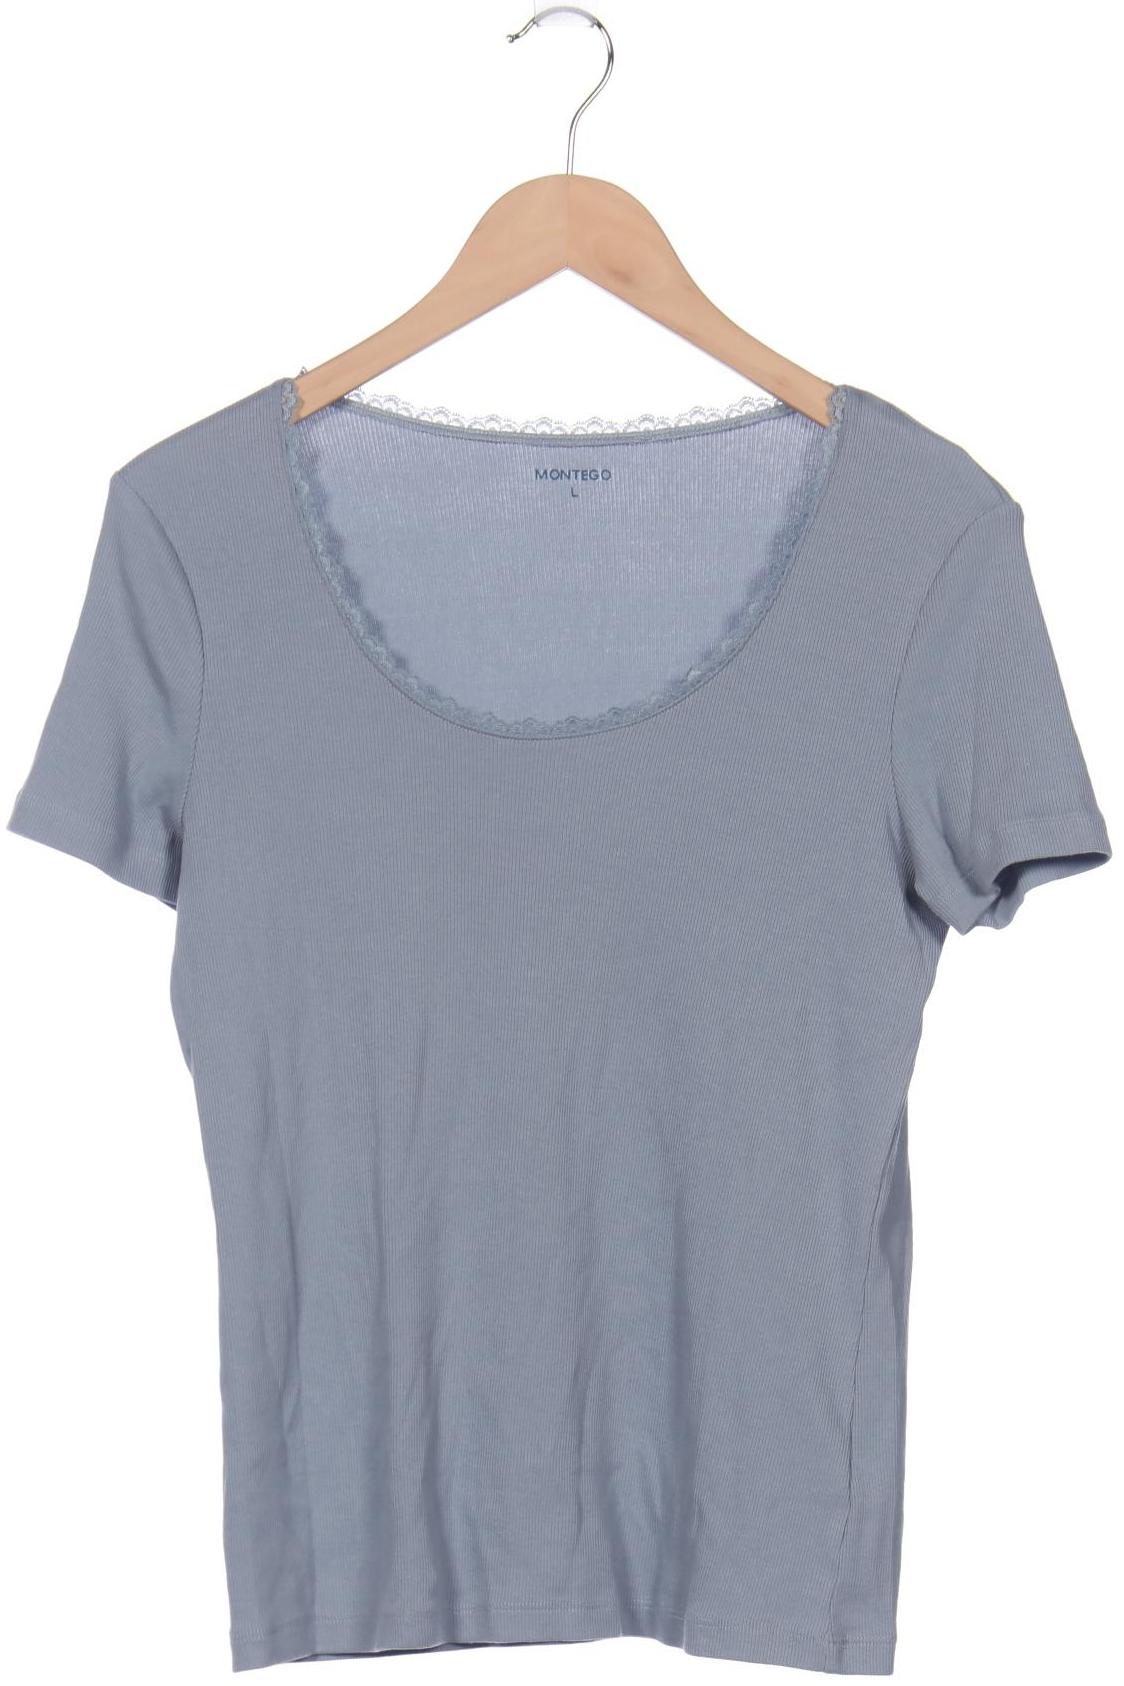 Montego Damen T-Shirt, hellblau, Gr. 42 von montego